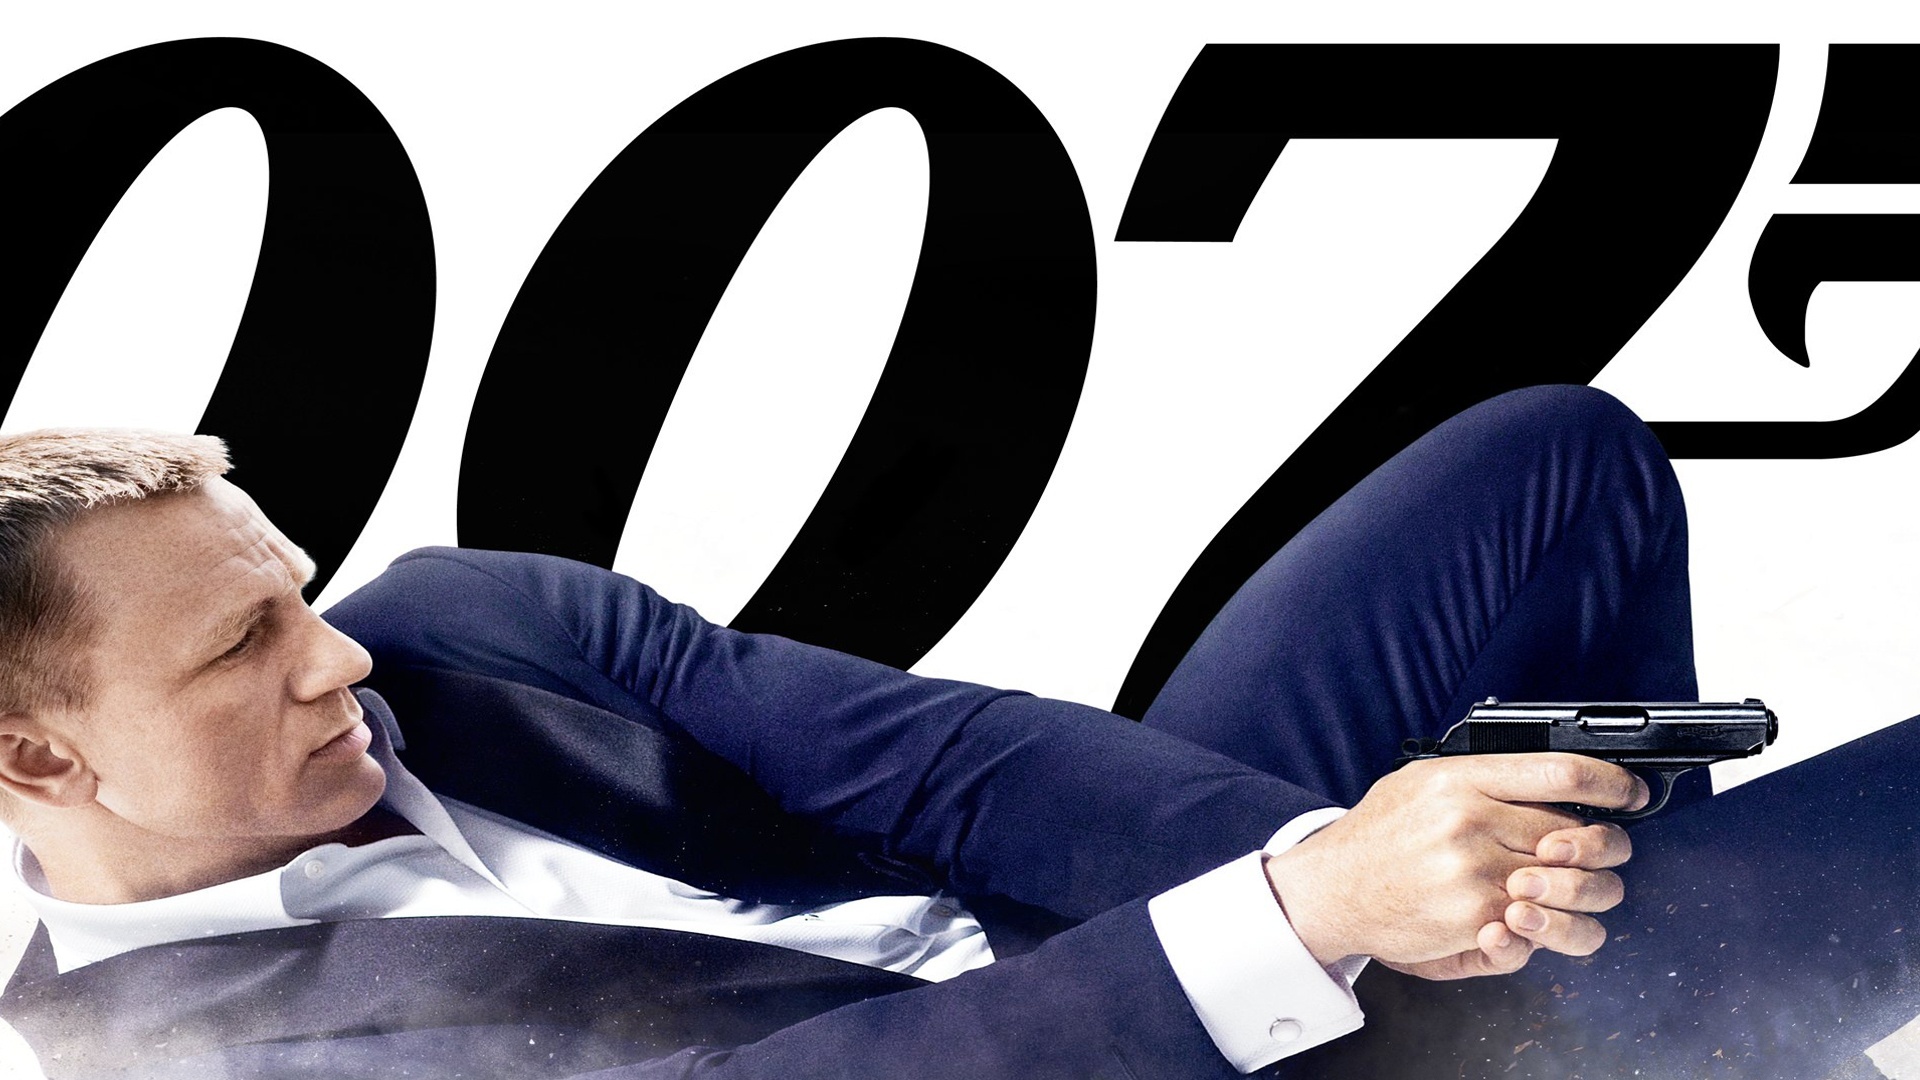 Daniel Craig, Pistolet, James Bond, Agent 007